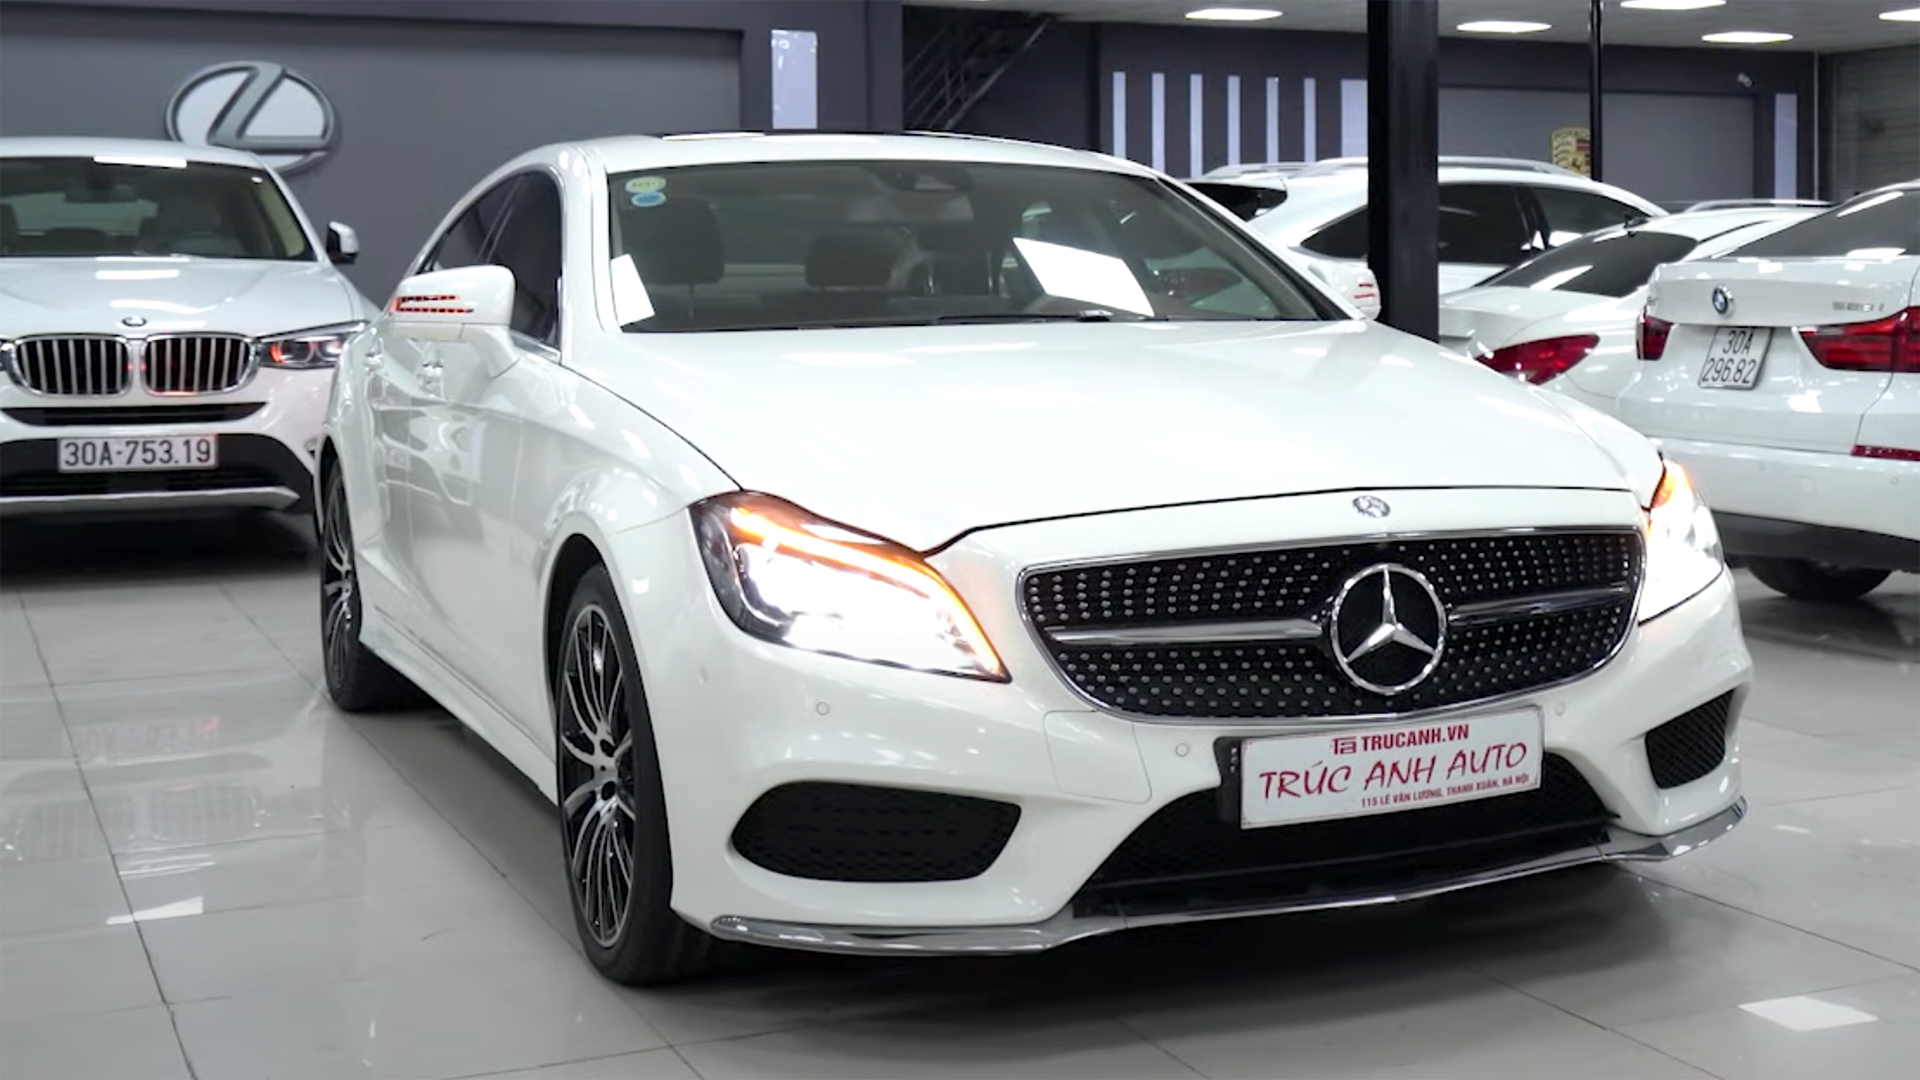 HÀNG HIẾM Mercedes CLS 550 2014 giá hơn 2,6 tỷ - MÓN HỜI?